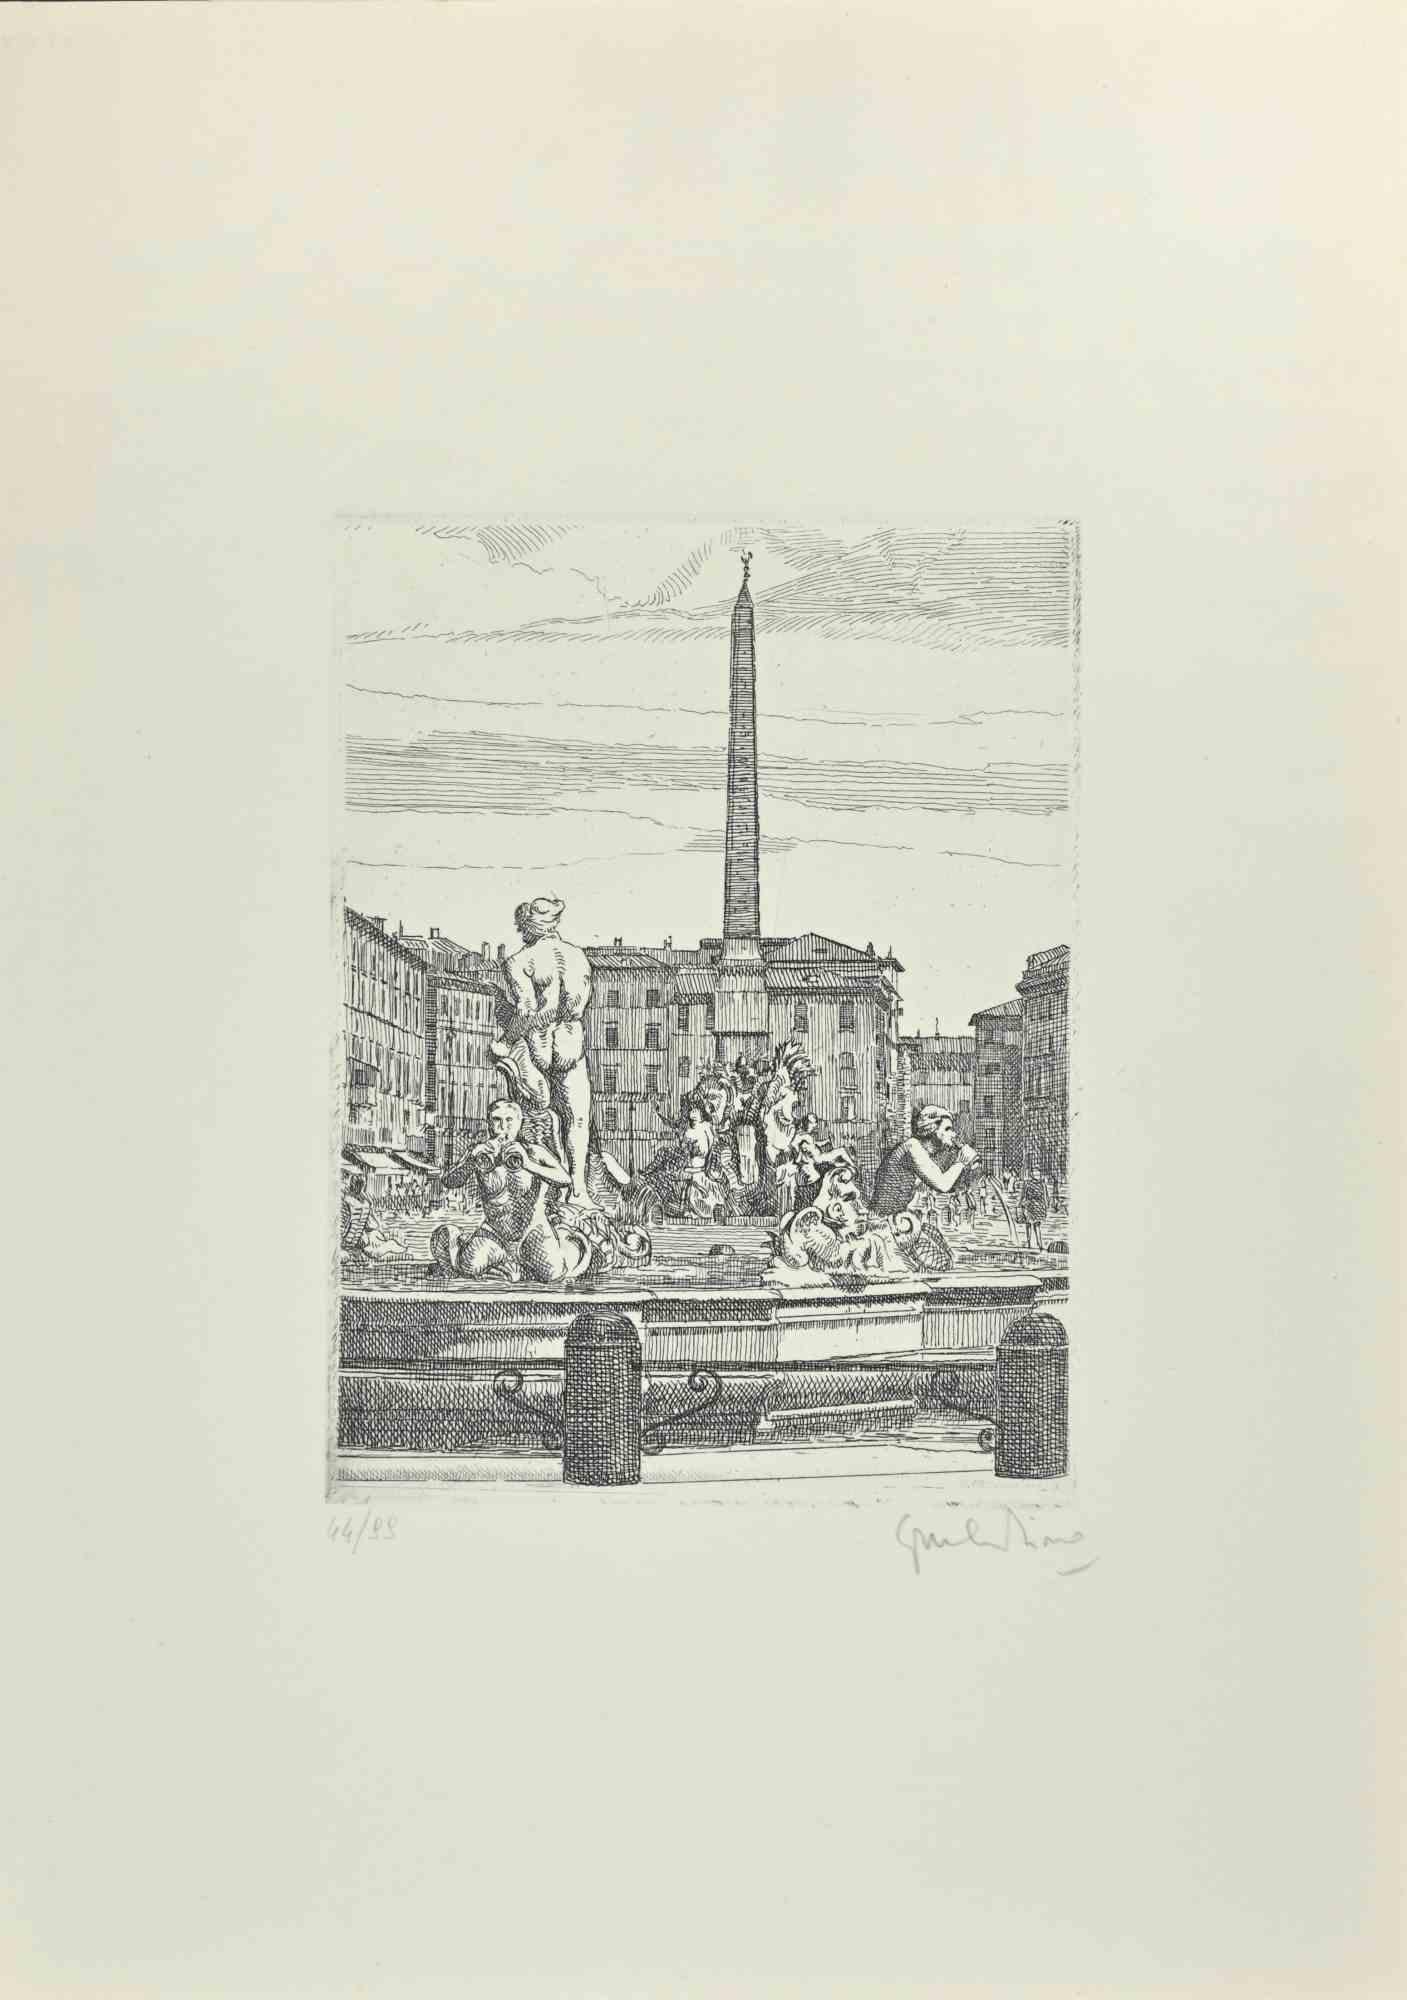 Navona Square - Fountain of 4 Rivers ist ein Kunstwerk von Giuseppe Malandrino.

Druck in Ätztechnik.

Vom Künstler in der rechten unteren Ecke mit Bleistift handsigniert.

Nummerierte Auflage von 99 Exemplaren.

Guter Zustand. 

Dieses Kunstwerk